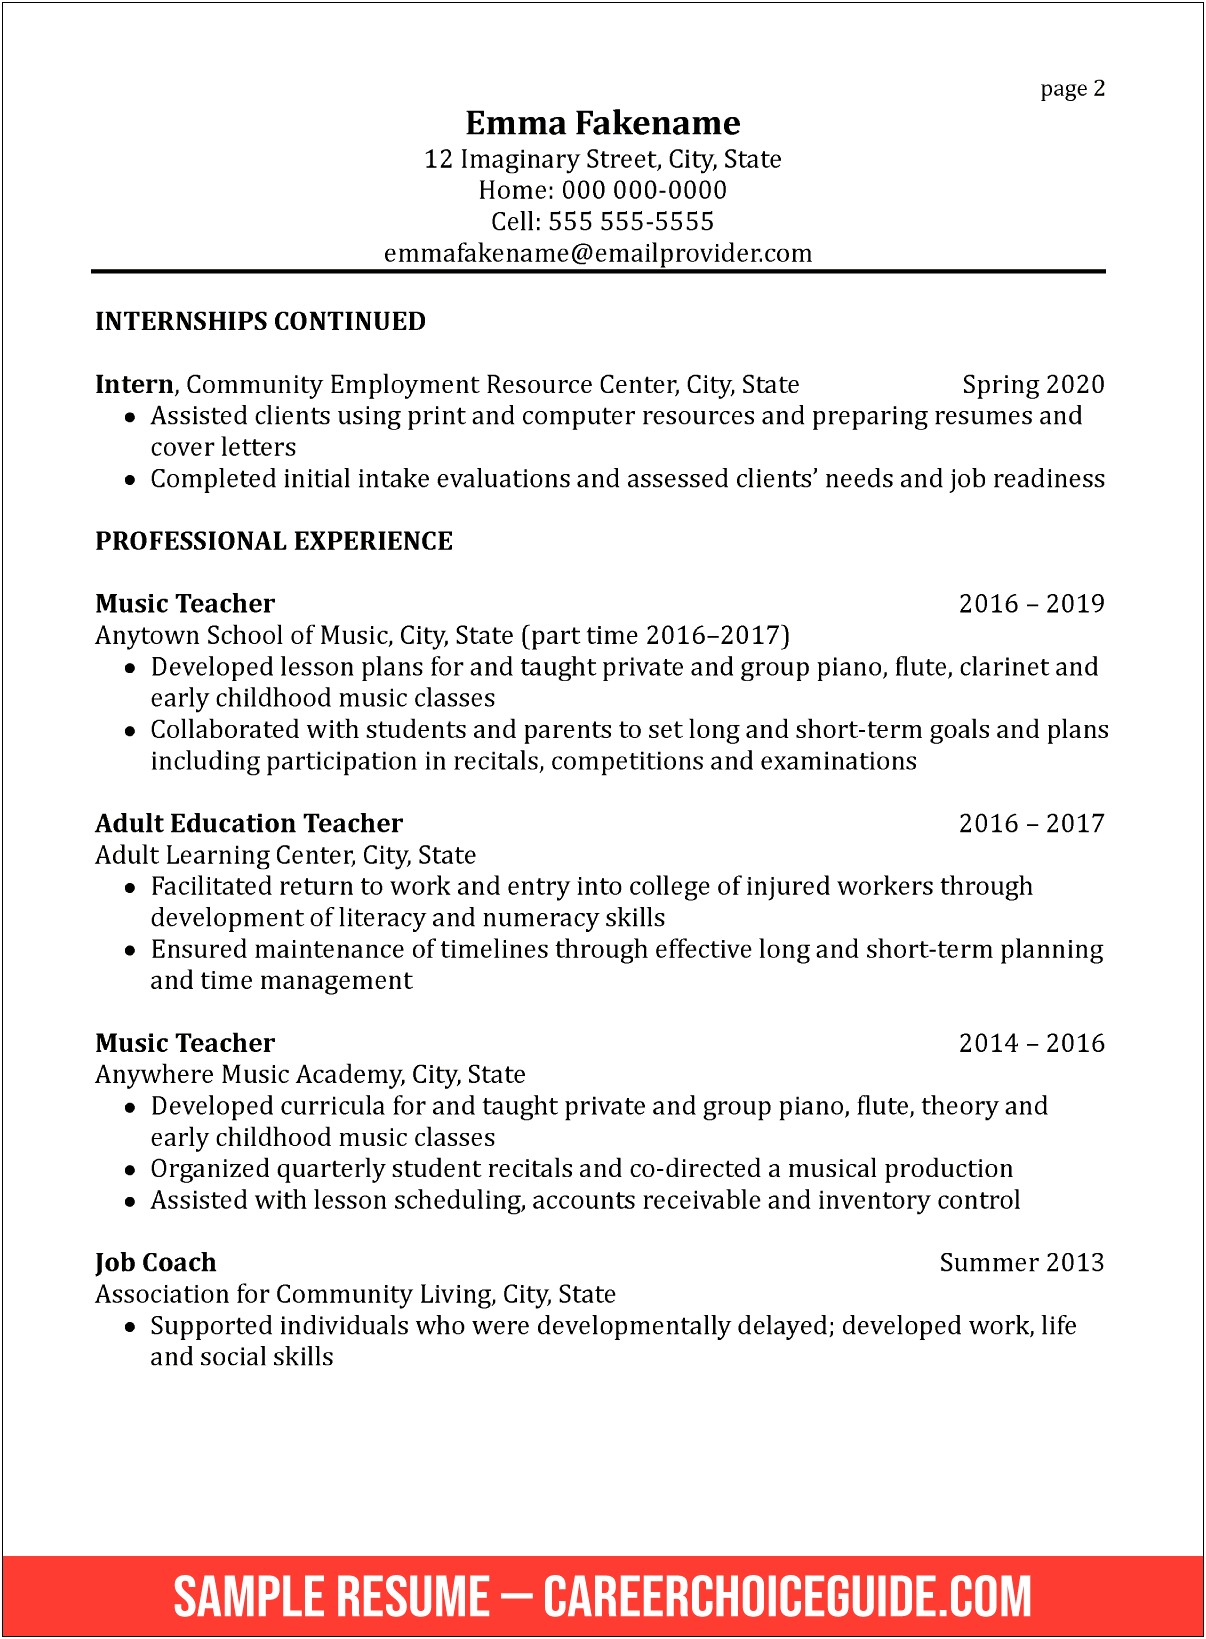 Resume For Career Education Teaching Job